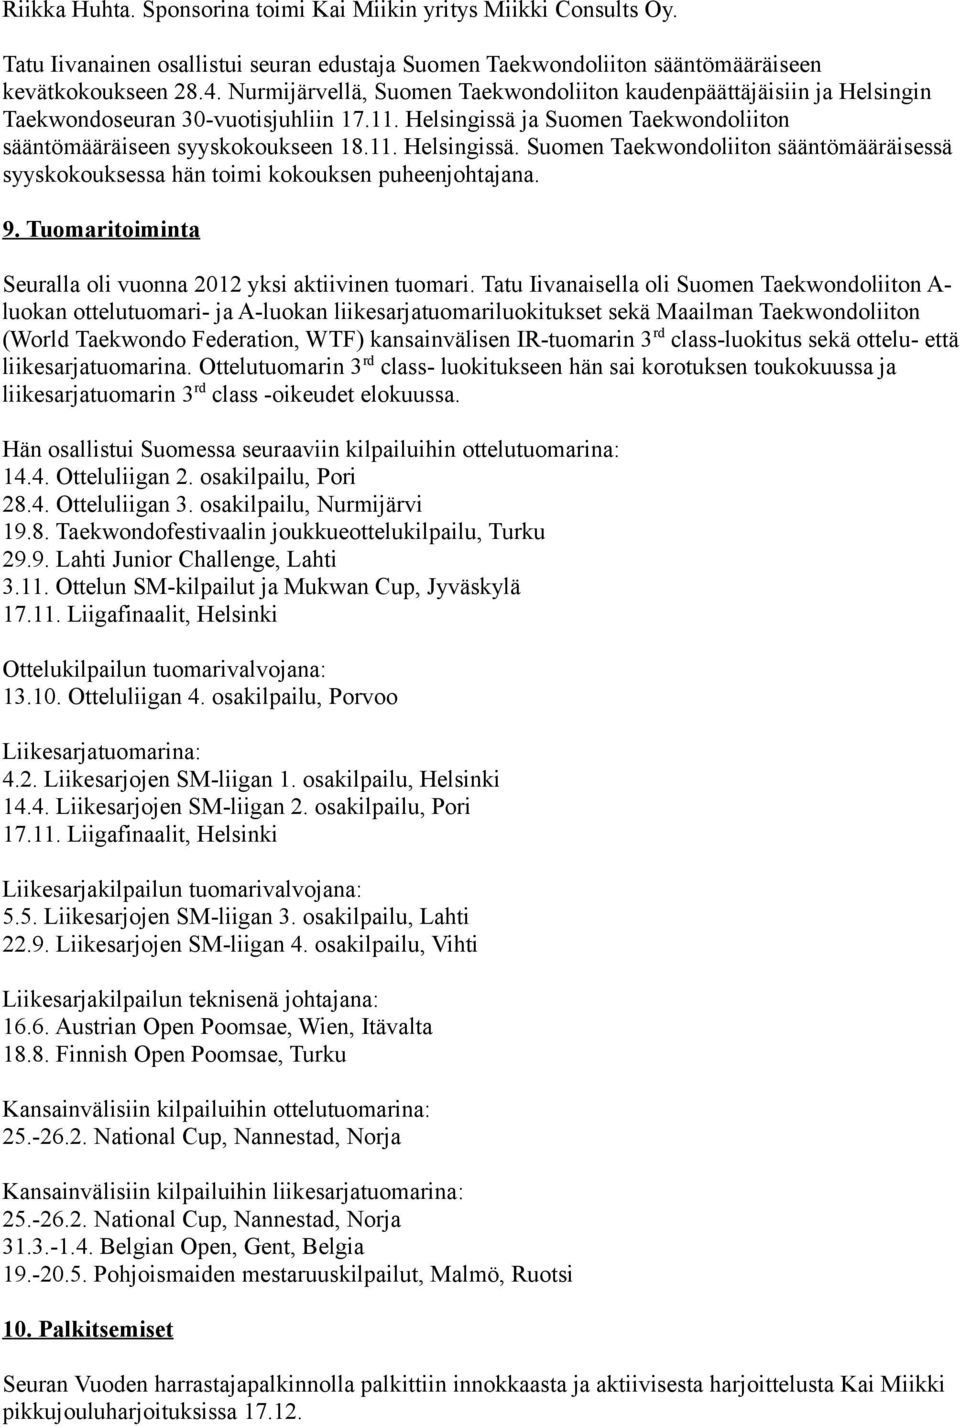 ja Suomen Taekwondoliiton sääntömääräiseen syyskokoukseen 18.11. Helsingissä. Suomen Taekwondoliiton sääntömääräisessä syyskokouksessa hän toimi kokouksen puheenjohtajana. 9.